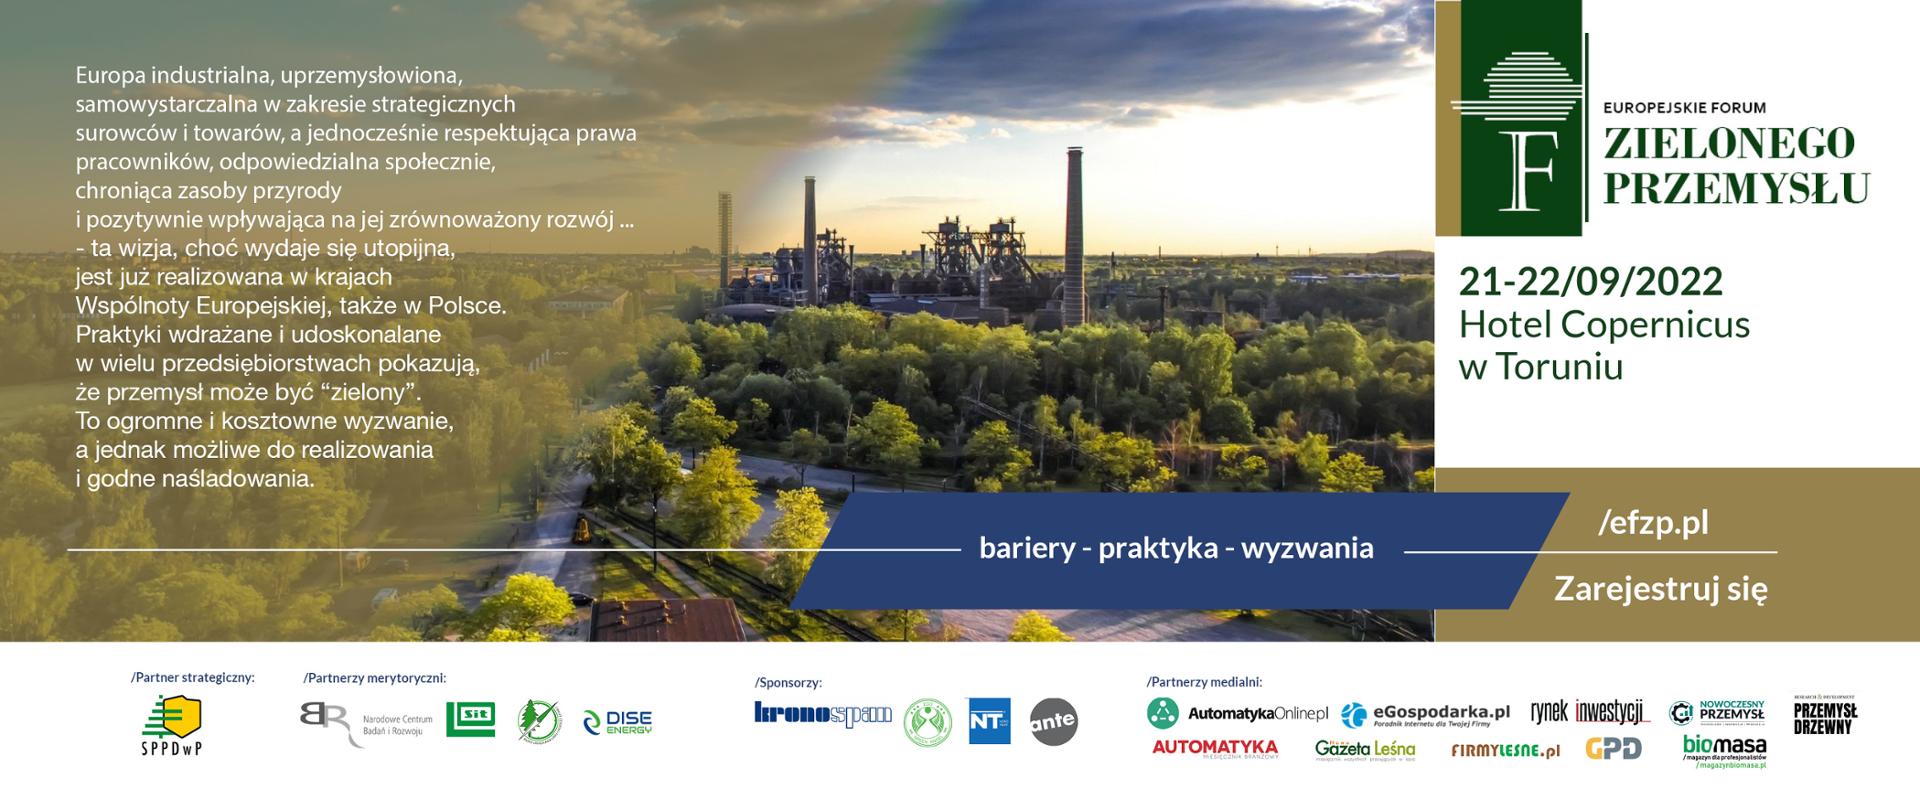 Europejskie Forum Zielonego Przemysłu po raz pierwszy w Toruniu 